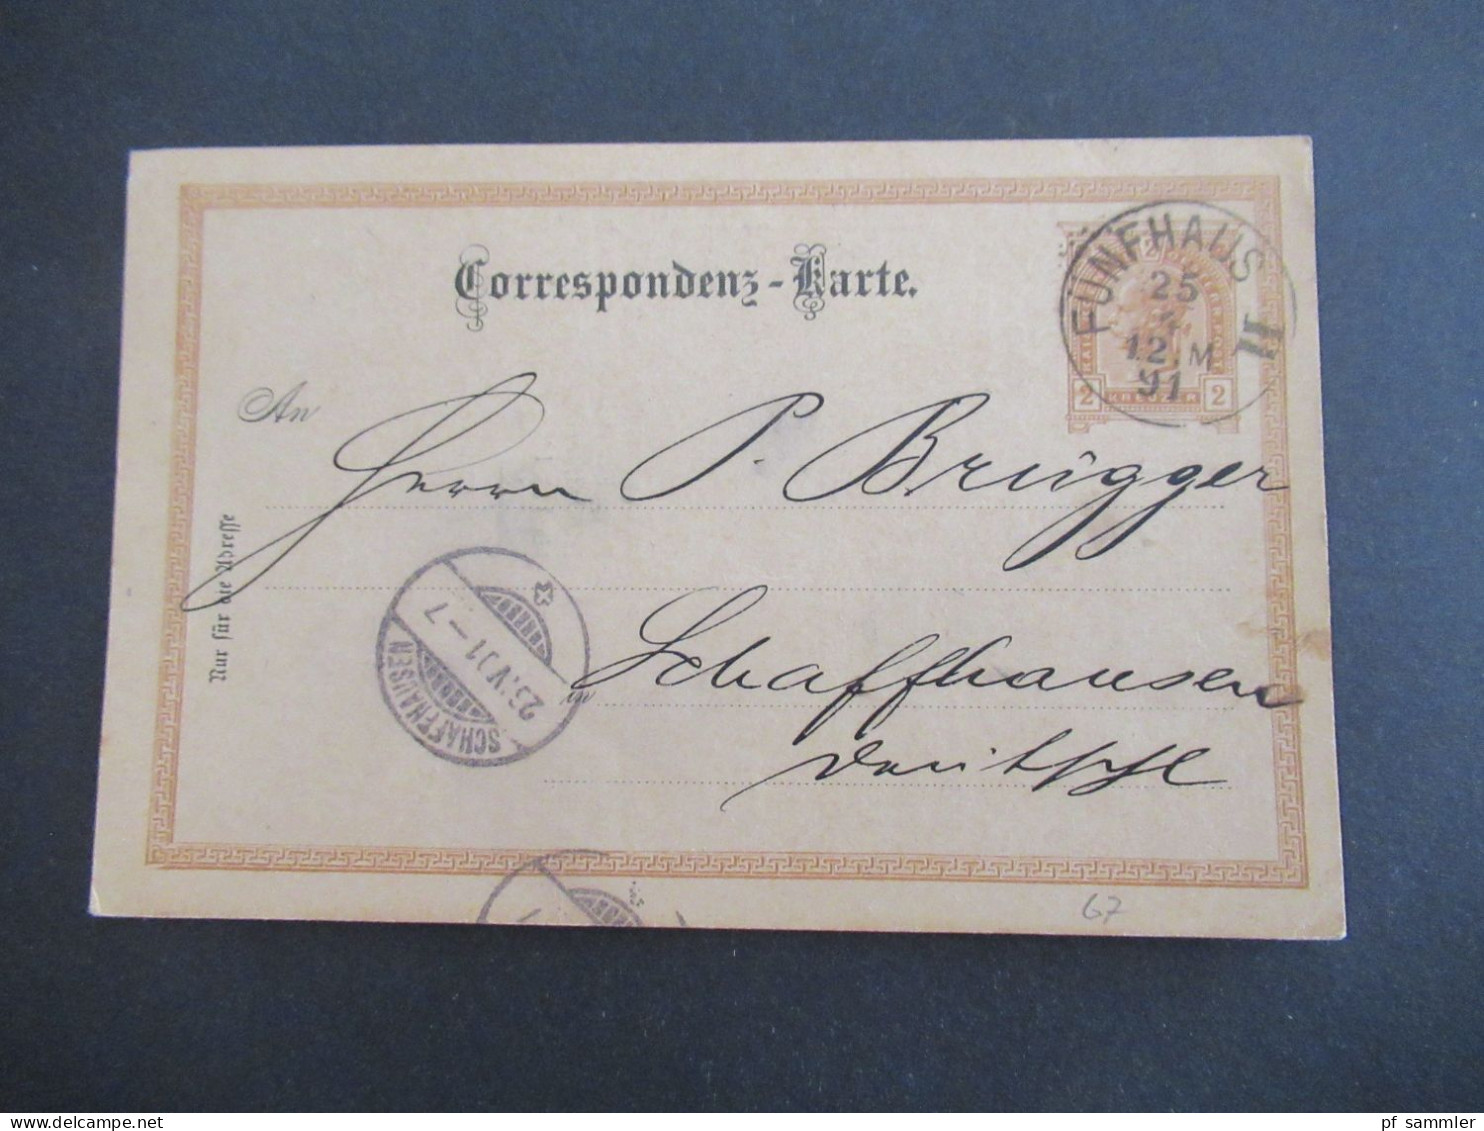 Österreich 1891 GA 2 Kreuzer Bedruckte PK Géza Baneth, Weingrosshandlung Wien Stempel Fünfhaus II - Schaffhausen Schweiz - Postcards